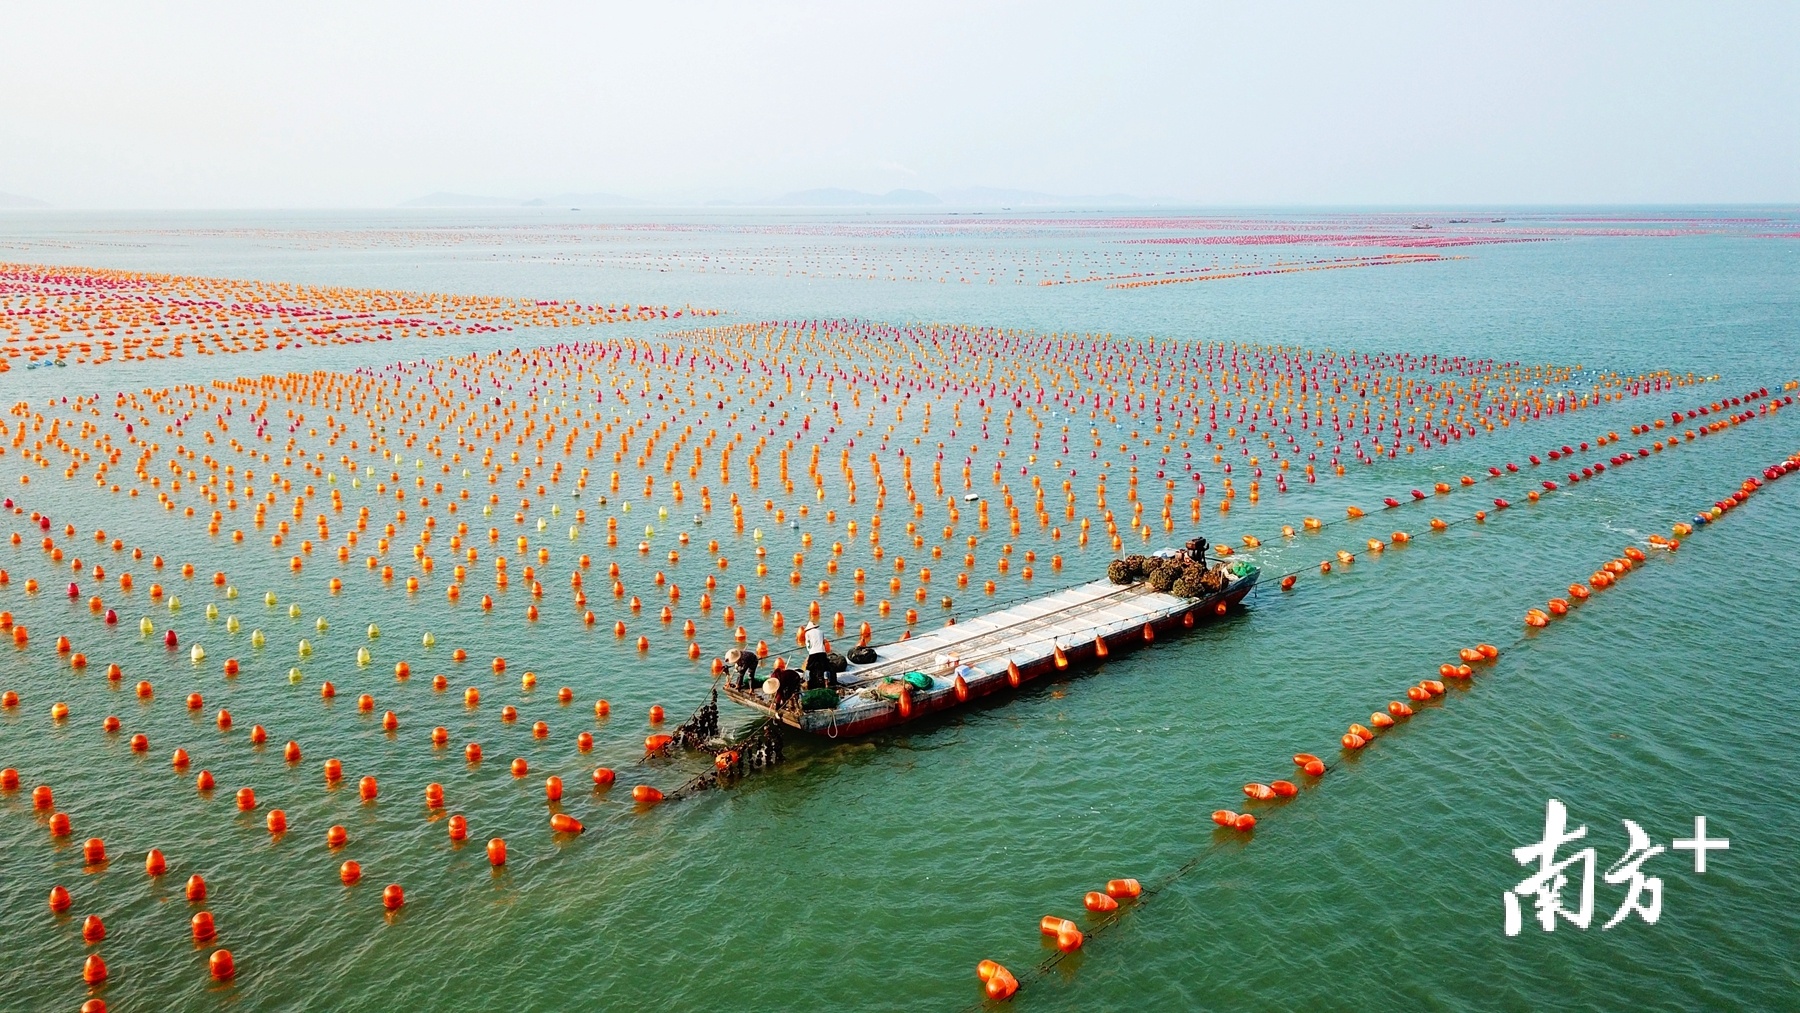 每到牡蛎肥美时，渔民就忙着将吊在海上浮球的大牡蛎串打捞上市销售。